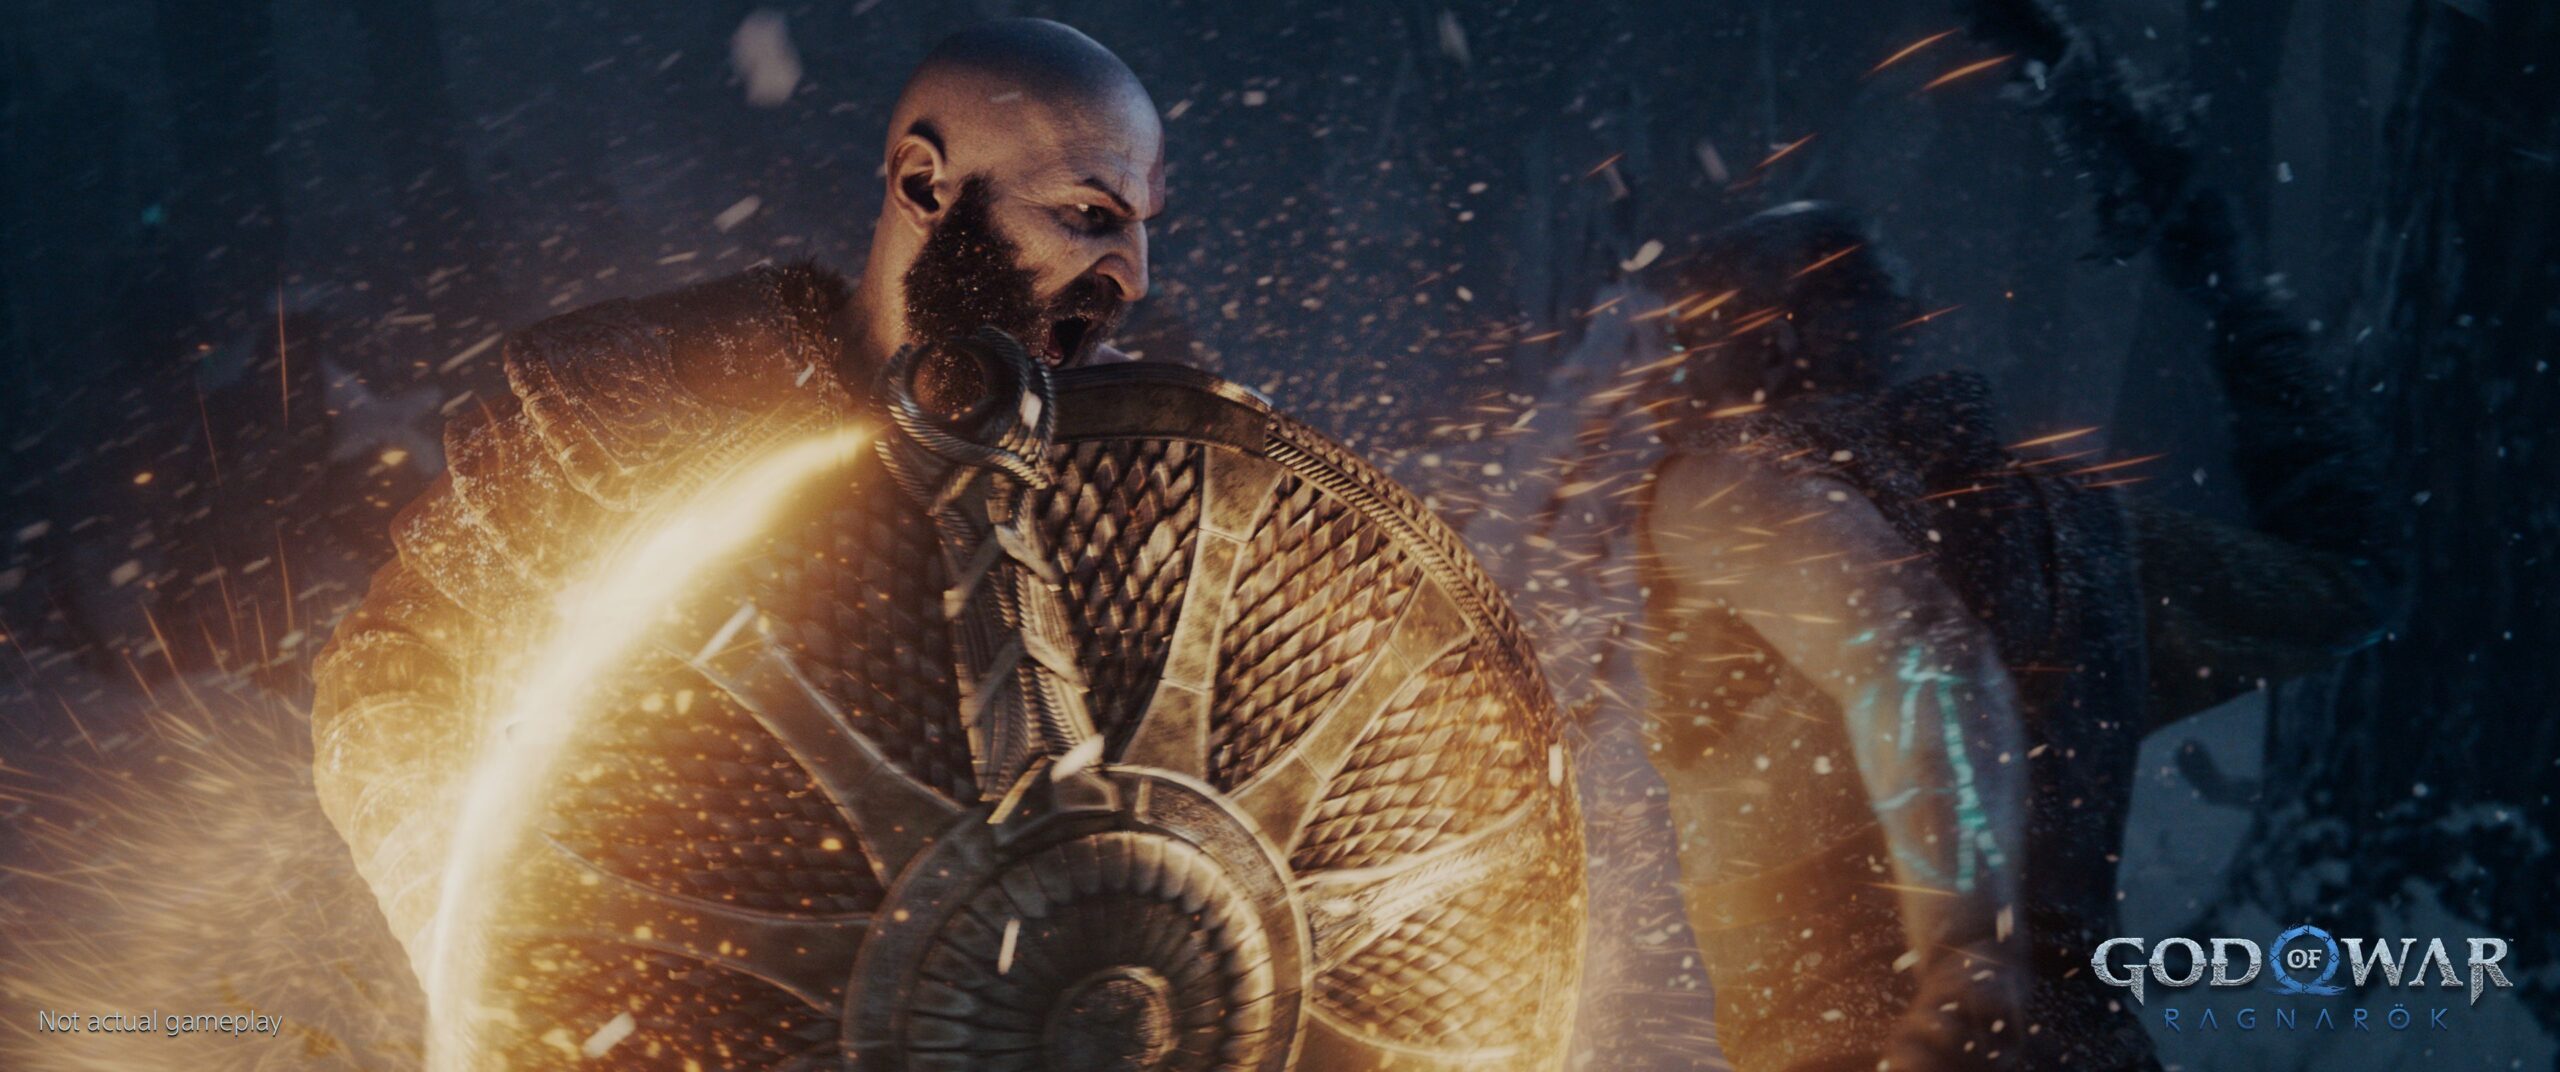 God of War Ragnarök tem lançamento confirmado para 2022 em trailer inédito  – Tecnoblog